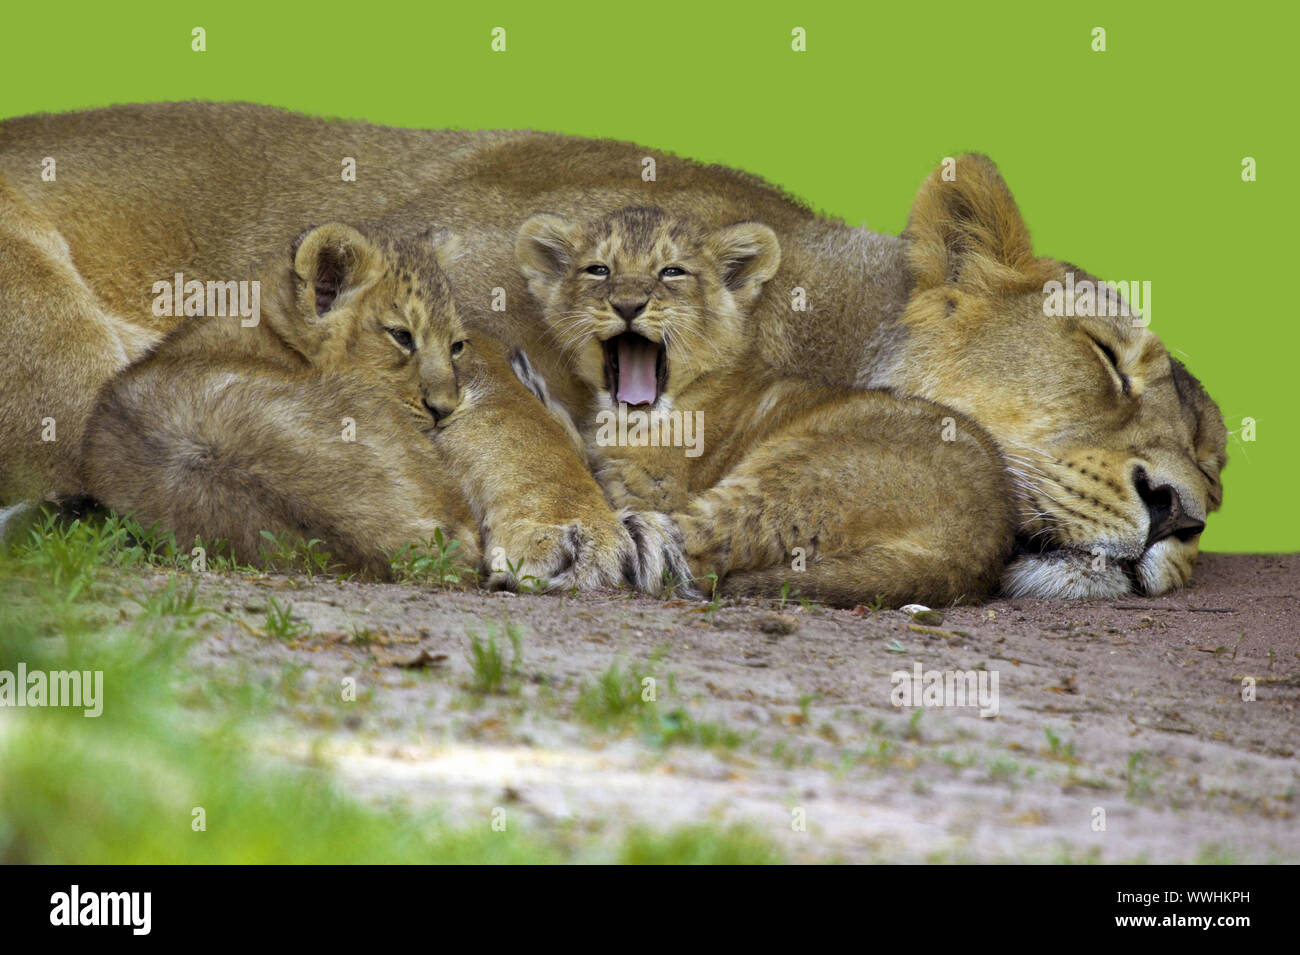 Asiatischer, Loewe (Panthera leo persica), Lion Asiatique Banque D'Images